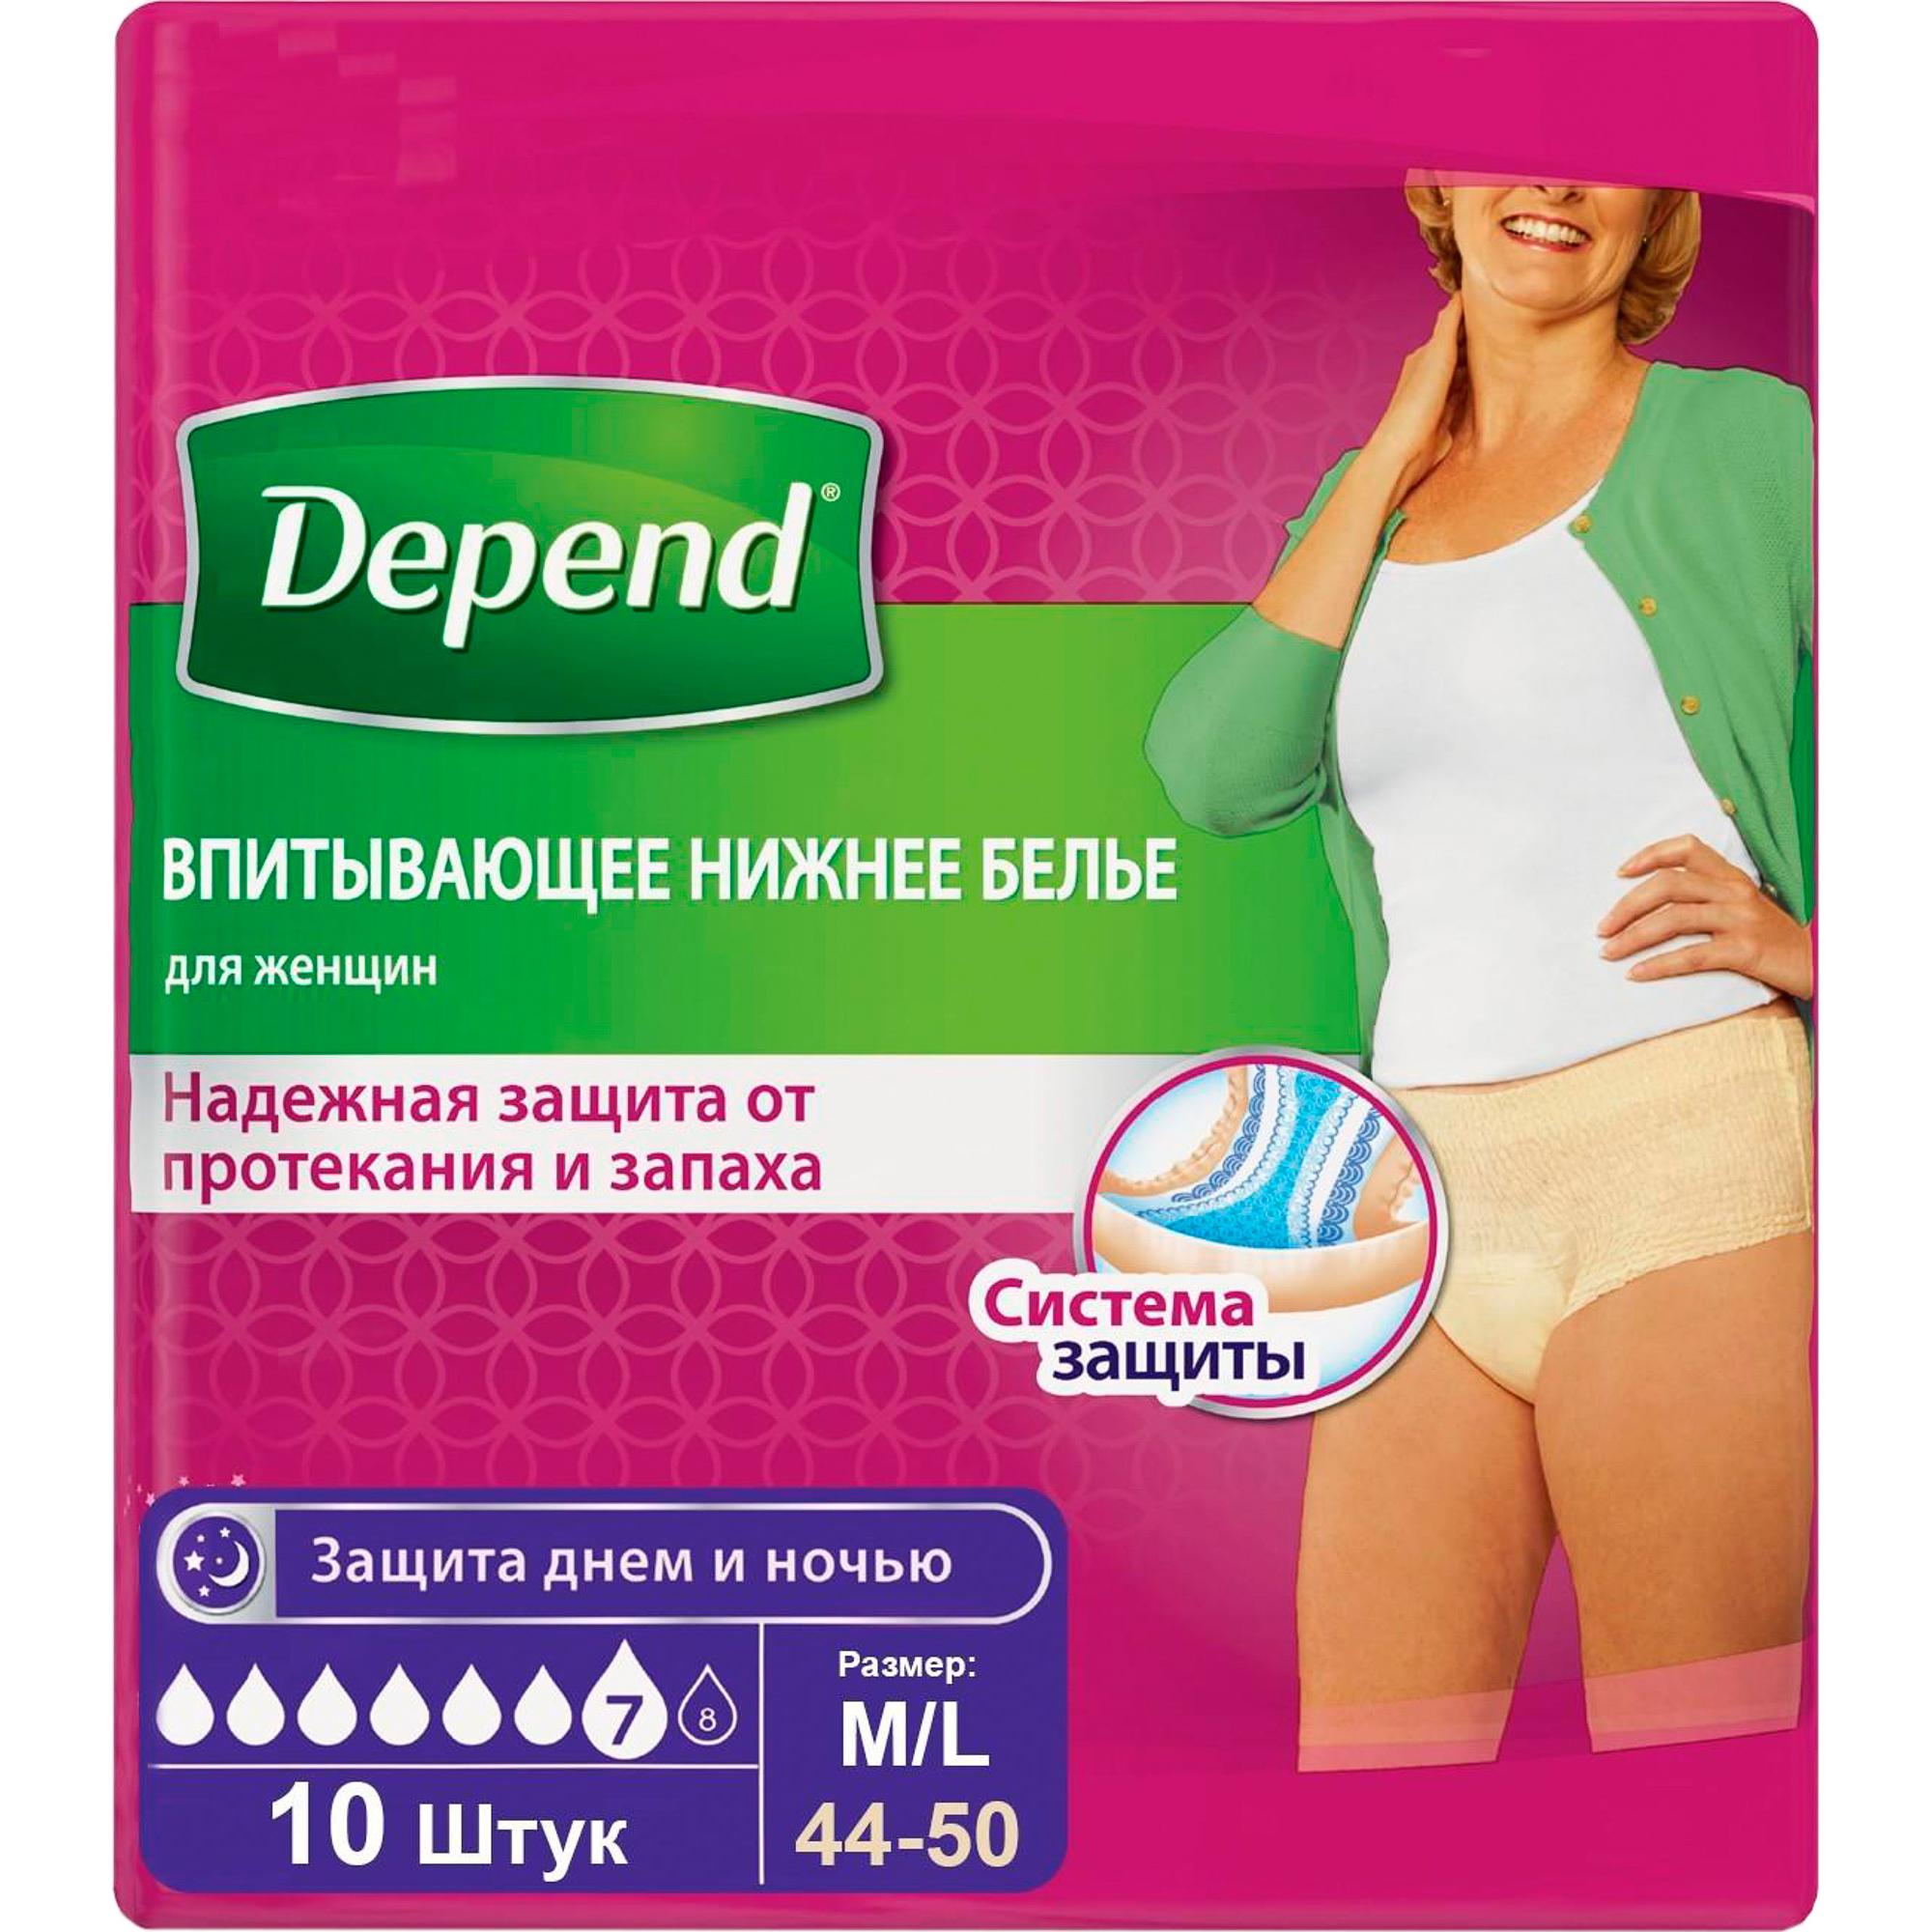 Впитывающее нижнее белье Depend Для женщин M/L 10 шт урологические прокладки для женщин depend normal 12 штук